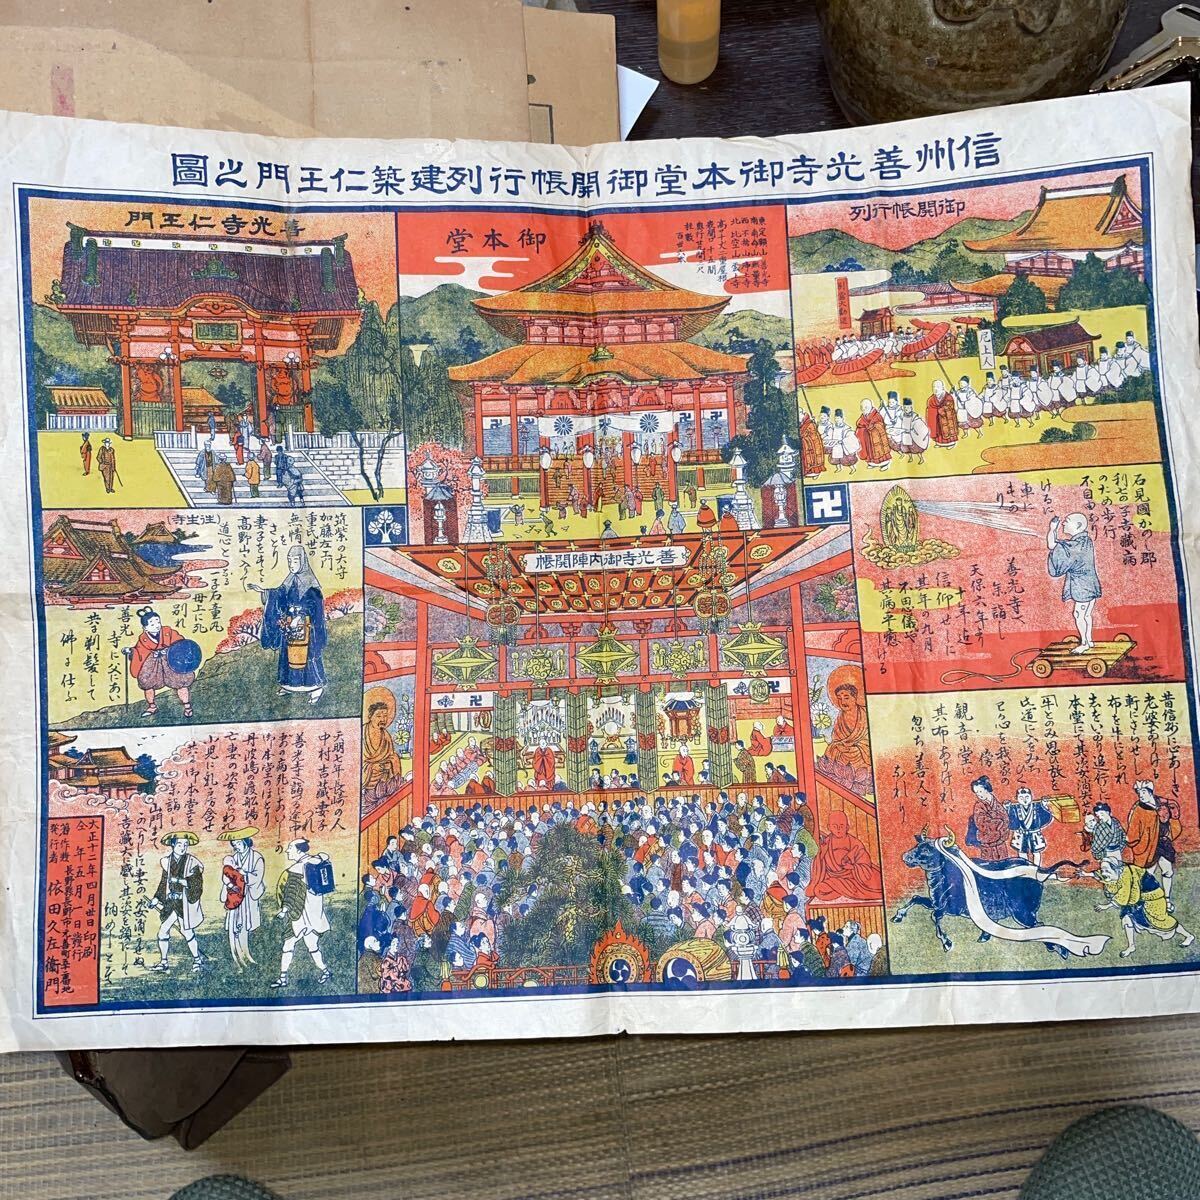 Ceci est un schéma de la porte Niomon, la salle principale du temple Zenkoji. Imprimé le 30 avril, 1923. Publié par Kyusaemon Yoda., peinture, Ukiyo-e, imprimer, photo d'un lieu célèbre